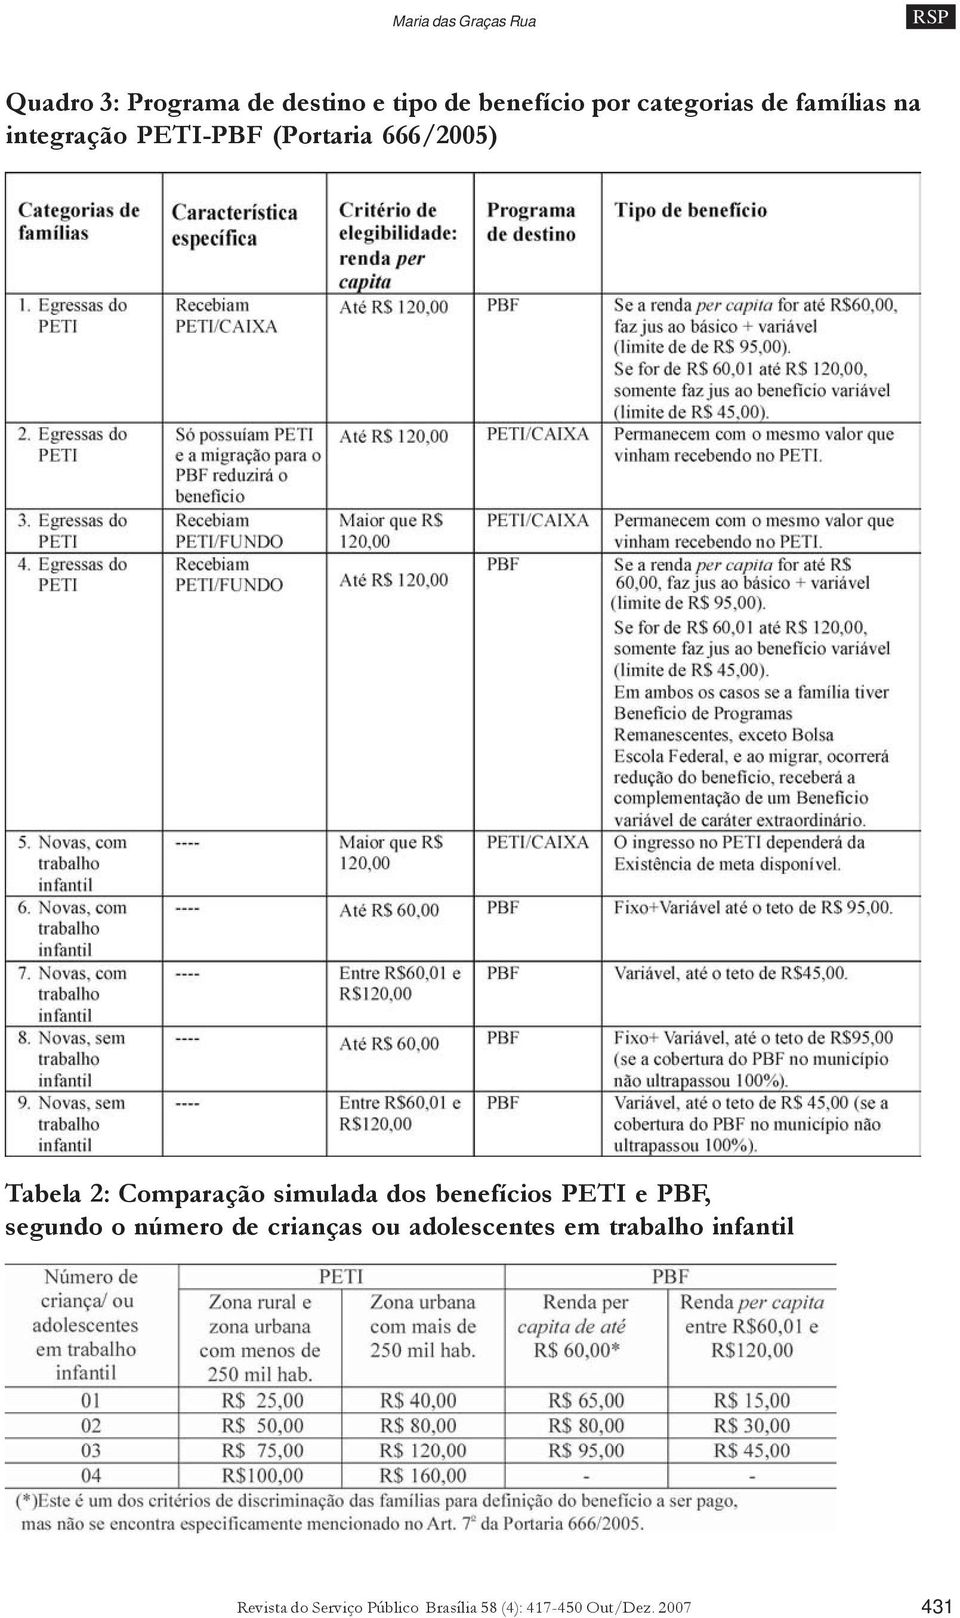 Comparação simulada dos benefícios PETI e PBF, segundo o número de crianças ou